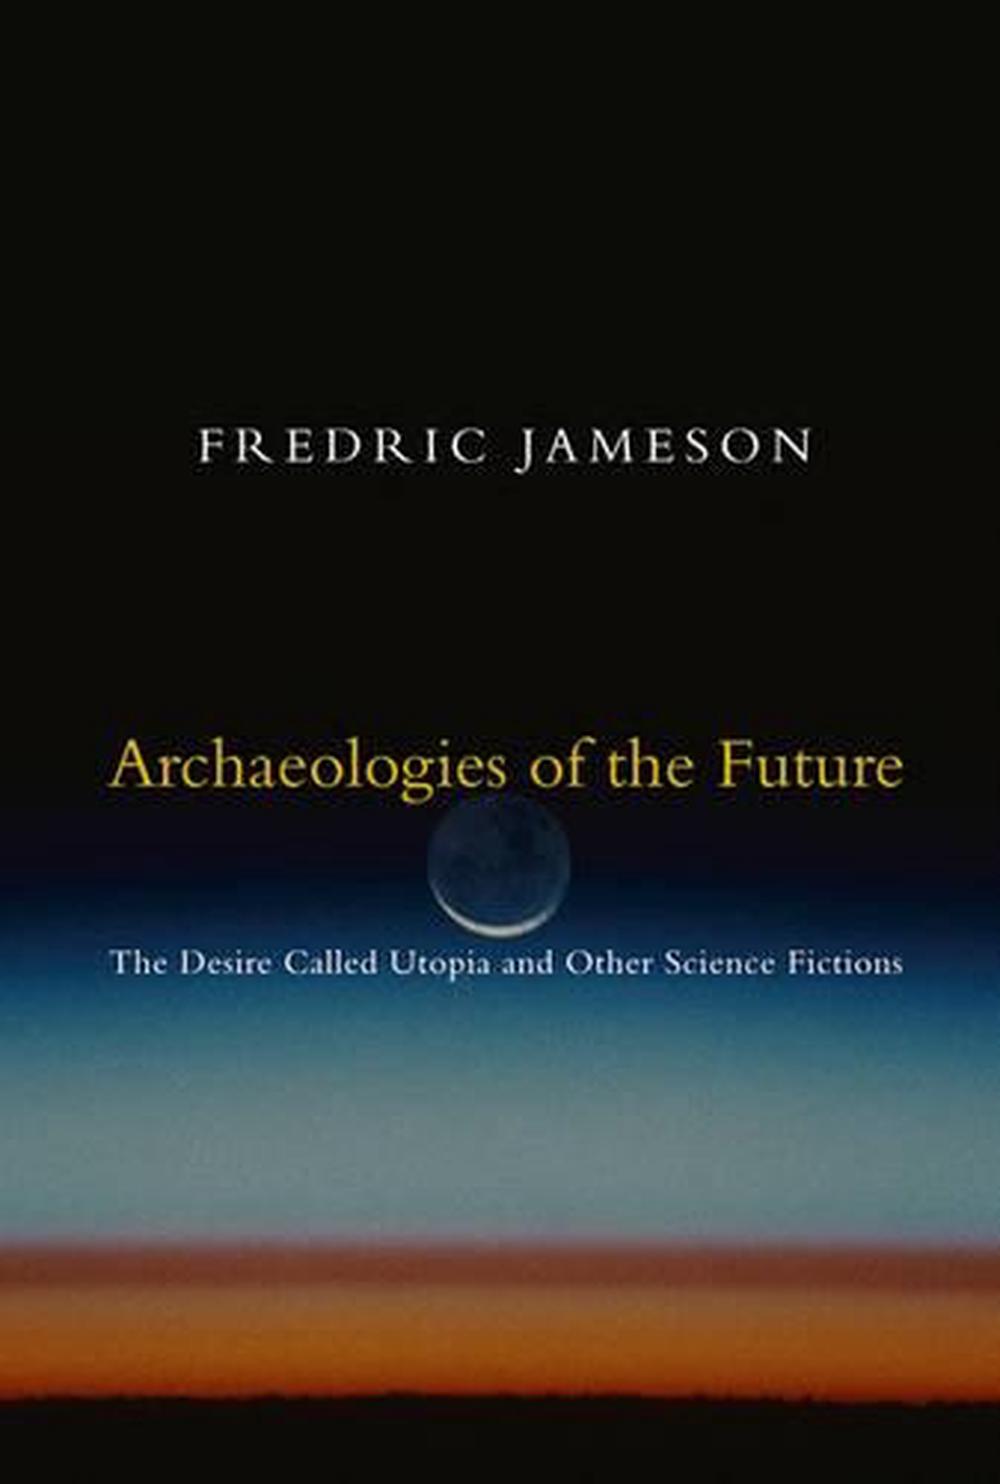 Archaeologies of the Future: The Desire Called Utopia and Other Science Fictions ร้านหนังสือและสิ่งของ เป็นร้านหนังสือภาษาอังกฤษหายาก และร้านกาแฟ หรือ บุ๊คคาเฟ่ ตั้งอยู่สุขุมวิท กรุงเทพ